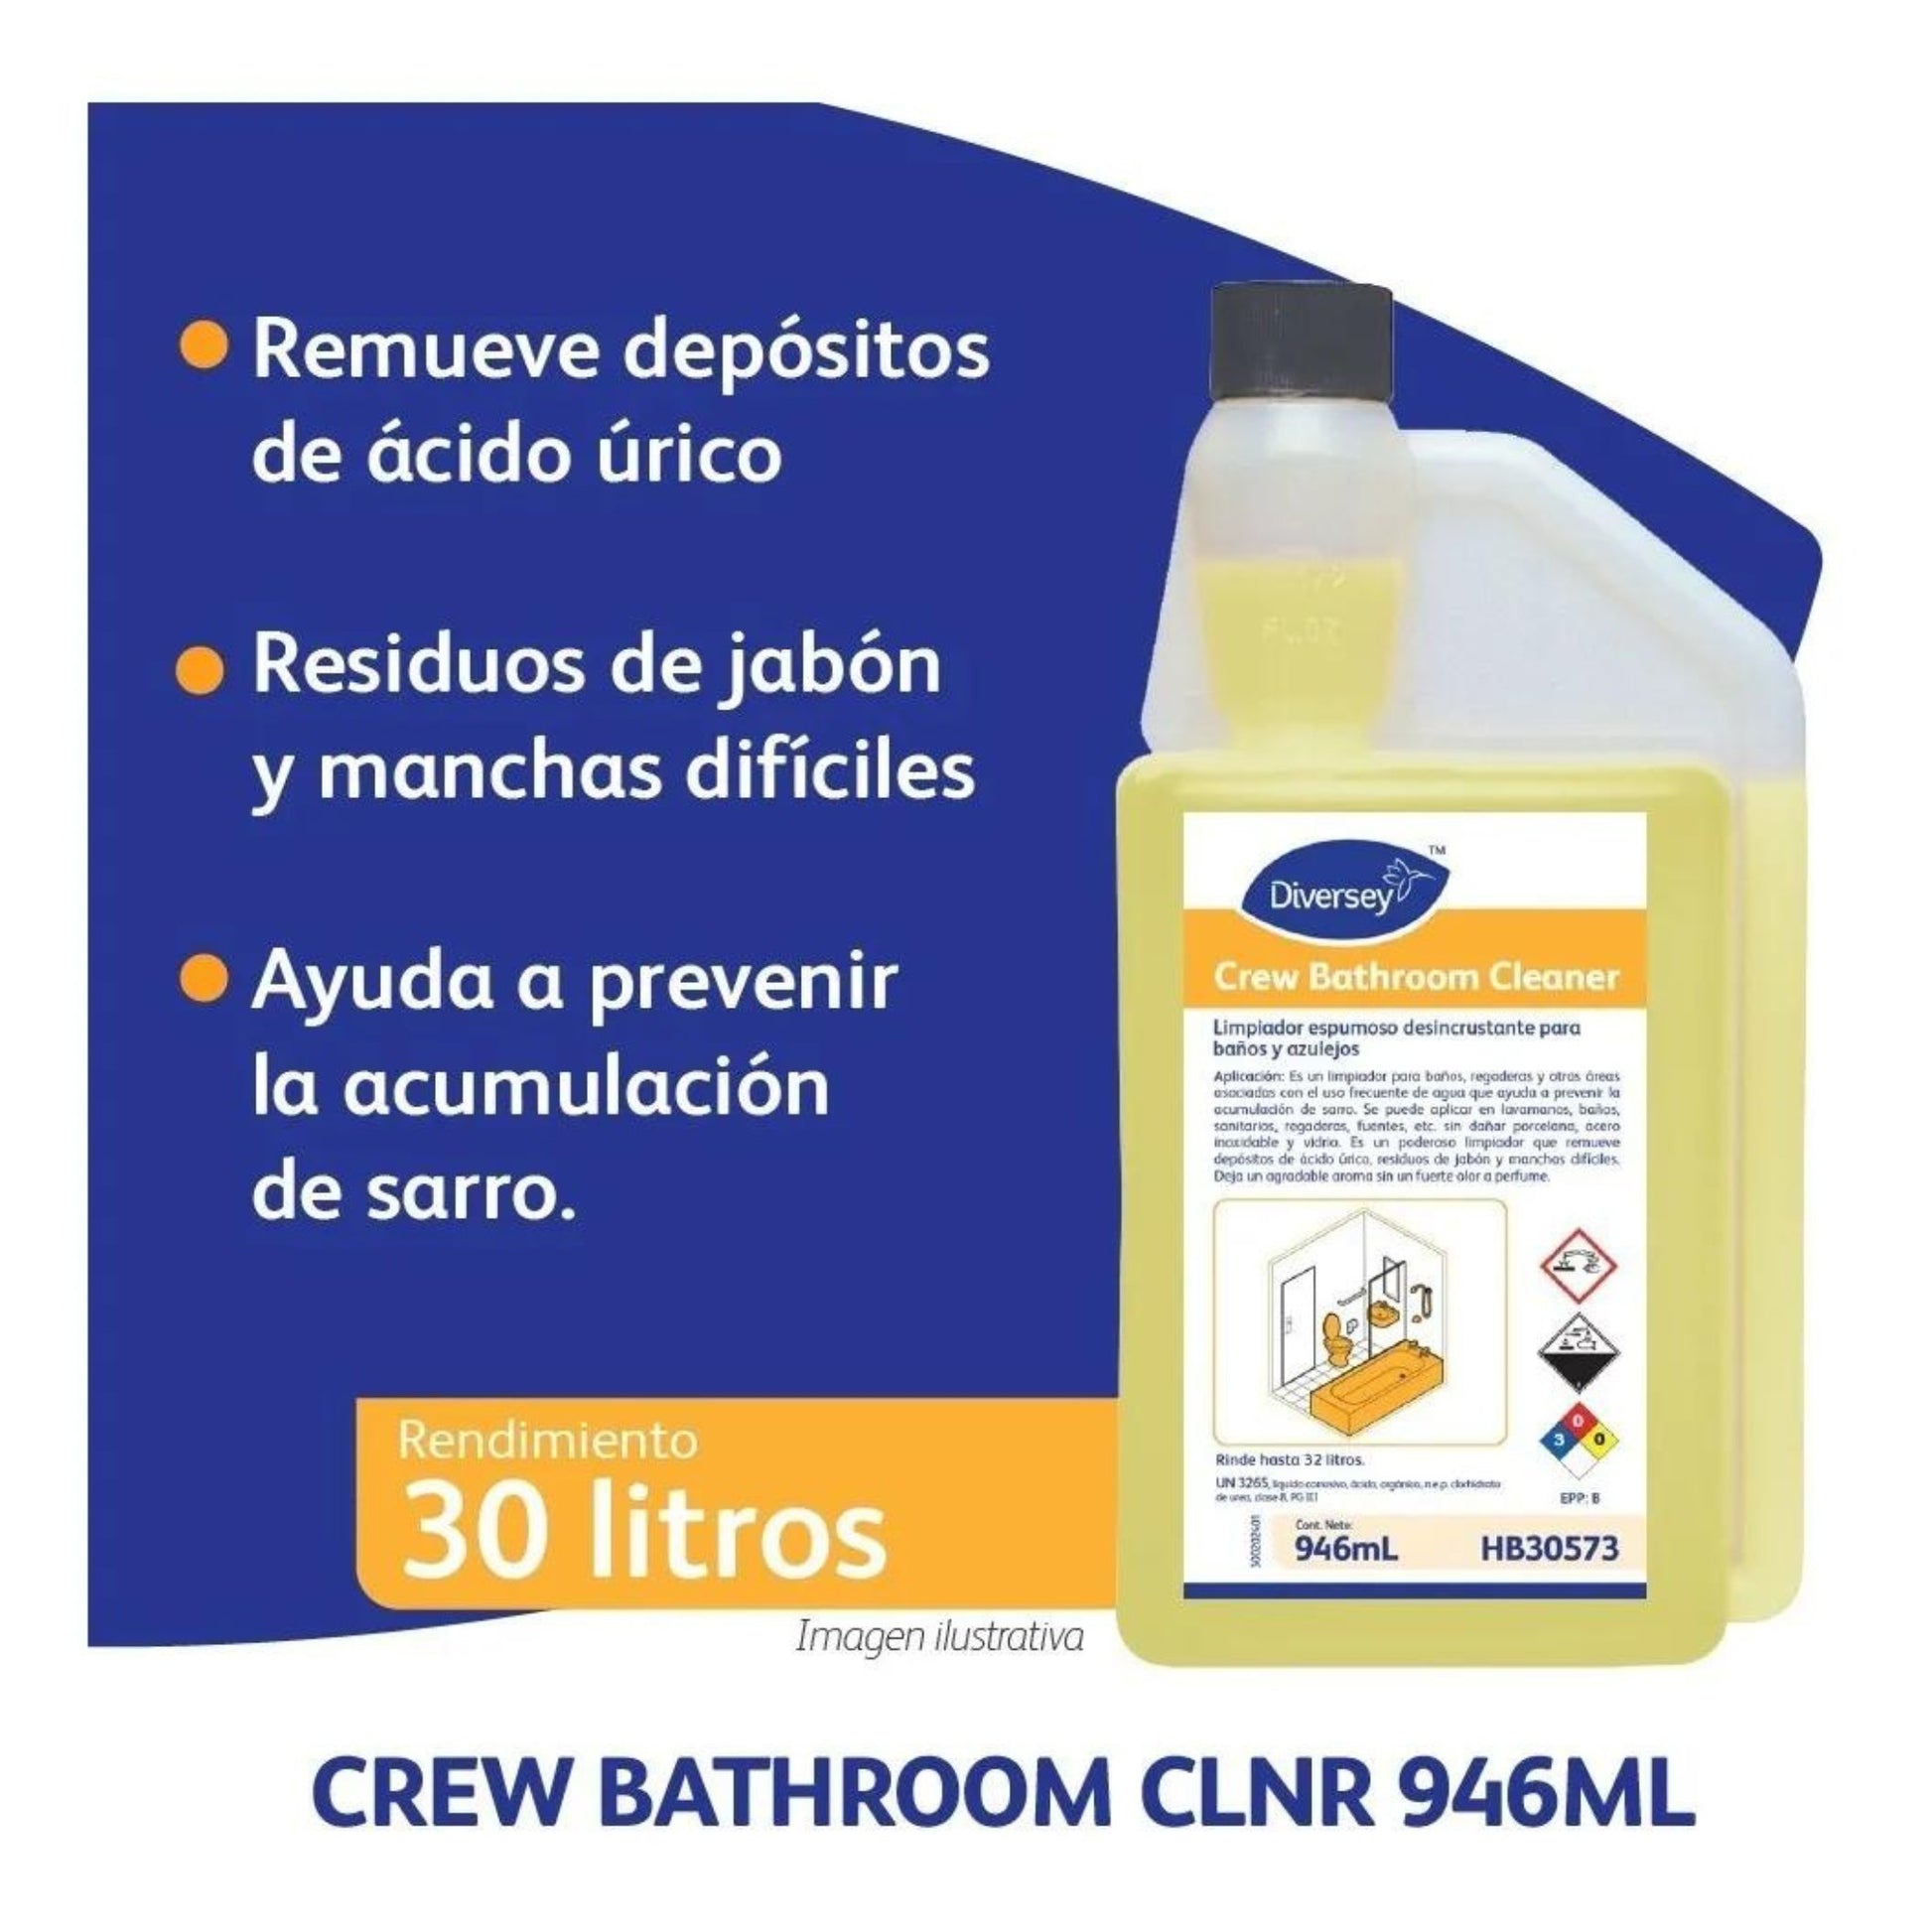 Crew Bathroom Cleaner - eShop Oficial Diversey MéxicoHB30573P